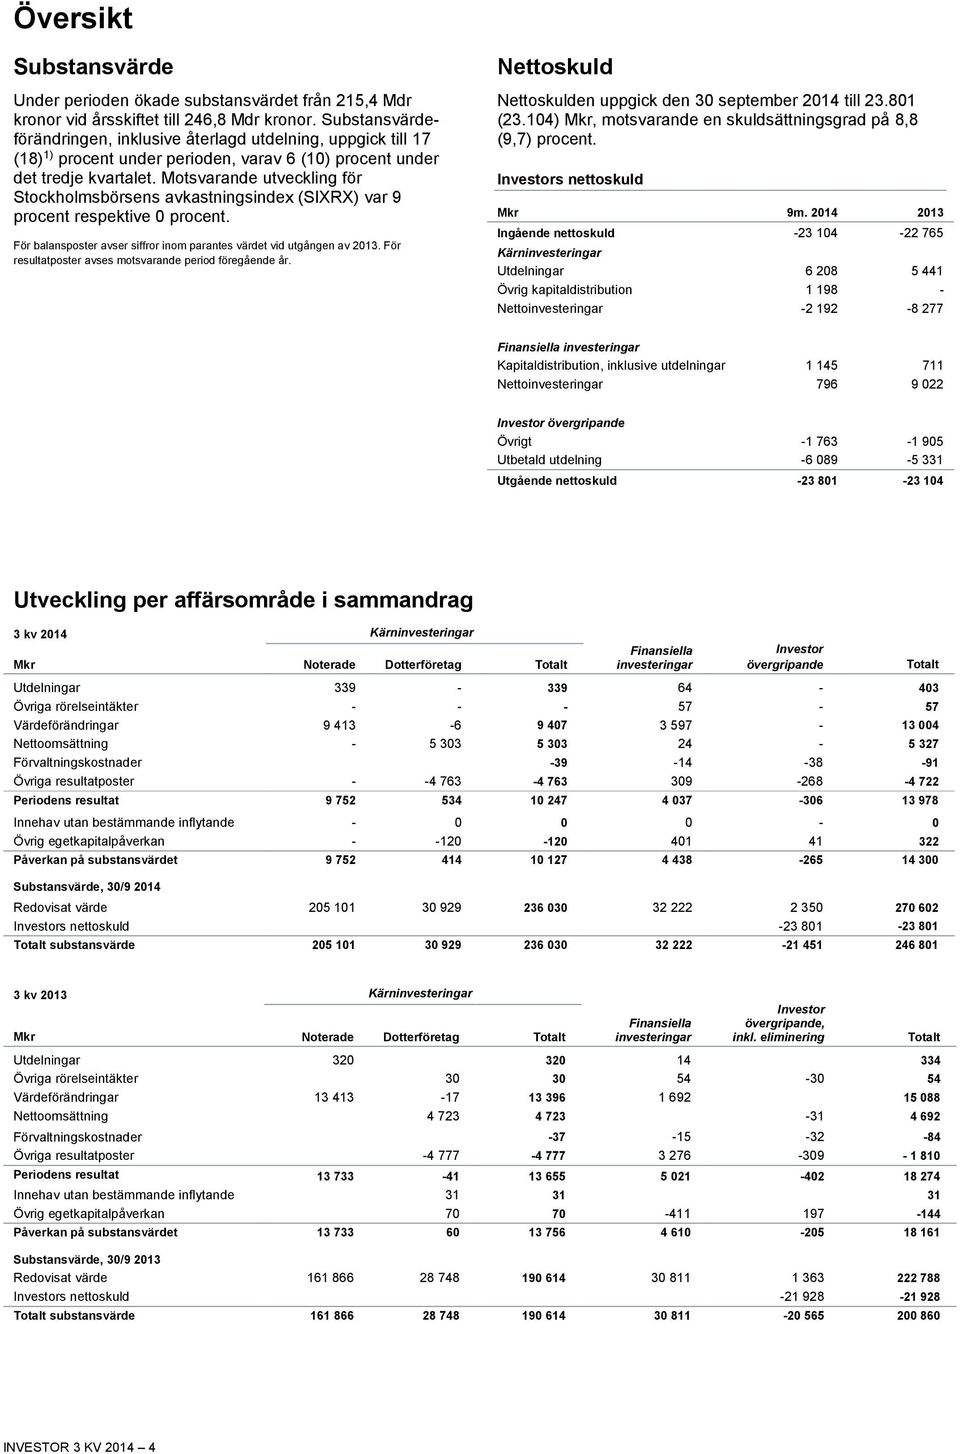 Motsvarande utveckling för Stockholmsbörsens avkastningsindex (SIXRX) var 9 procent respektive 0 procent. För balansposter avser siffror inom parantes värdet vid utgången av 2013.